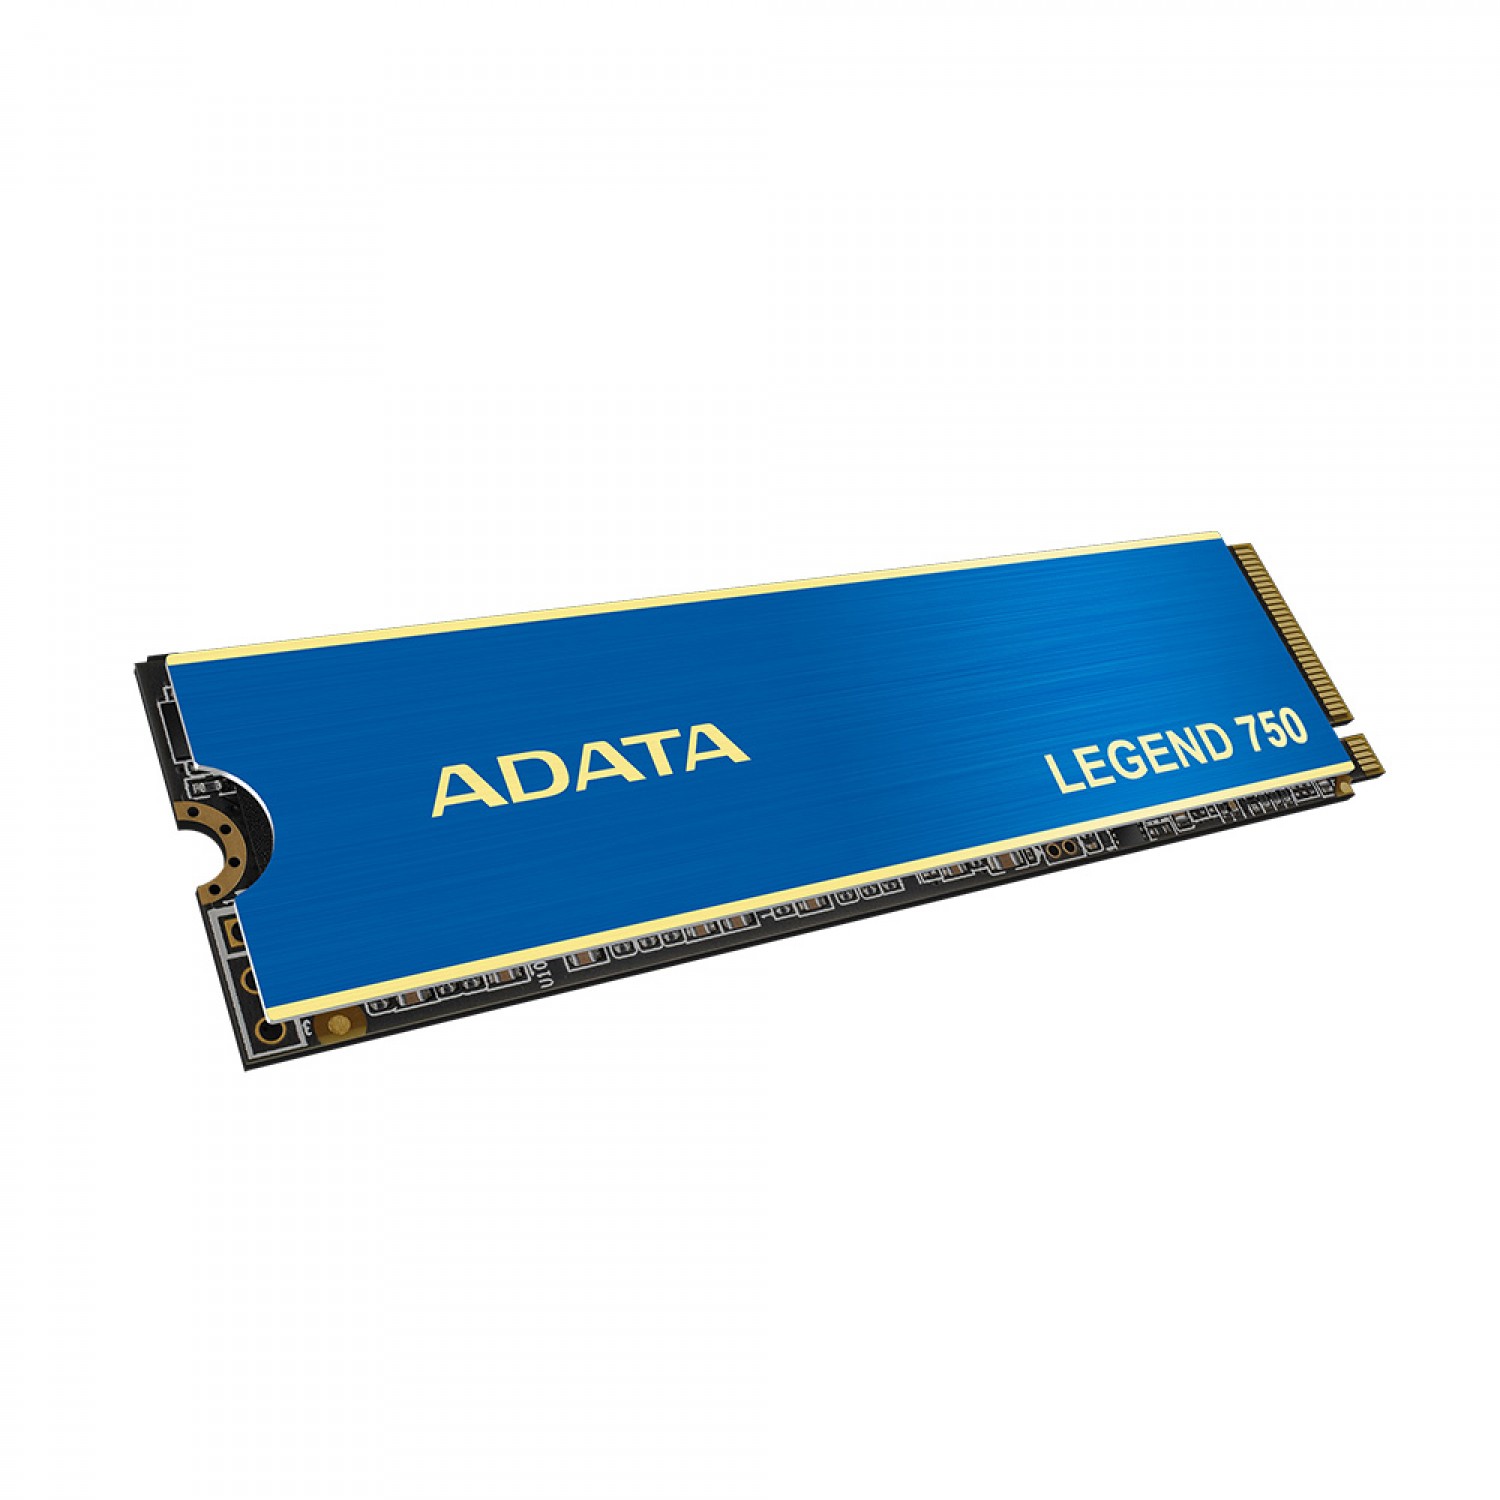 حافظه اس اس دی ADATA Legend 750 1TB-4